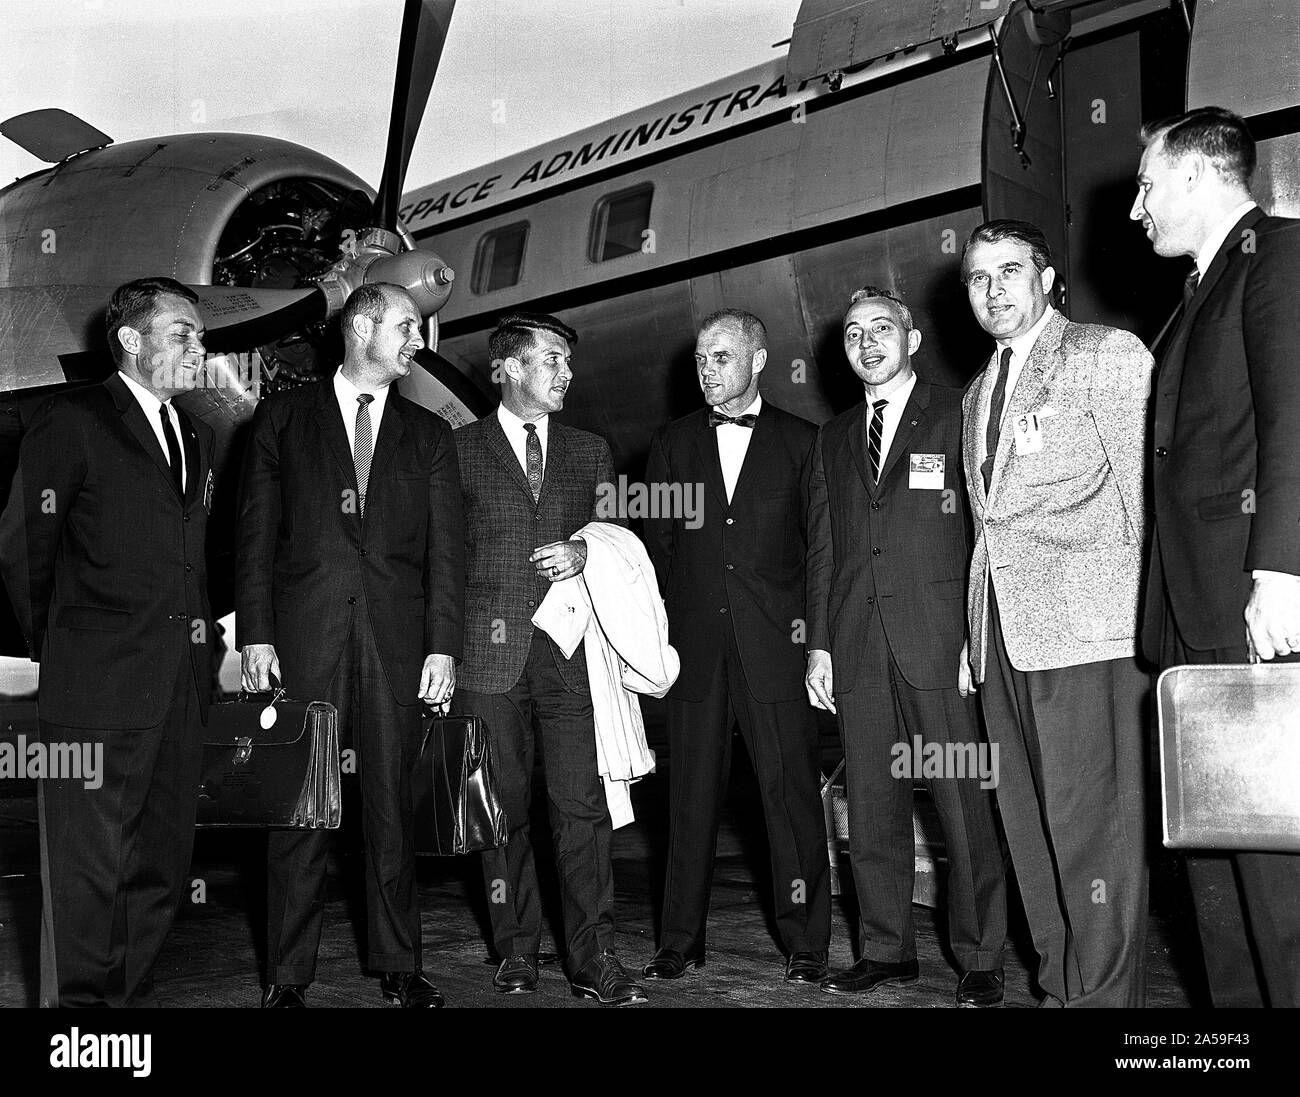 Questa fotografia è stata presa nel settembre 1962 durante un tale visita. Da sinistra a destra sono Elliot vedere, Tom Stafford, Wally Schirra, John Glenn, Brainerd Holmes, il dottor von Braun, e Jim Lovell. Foto Stock